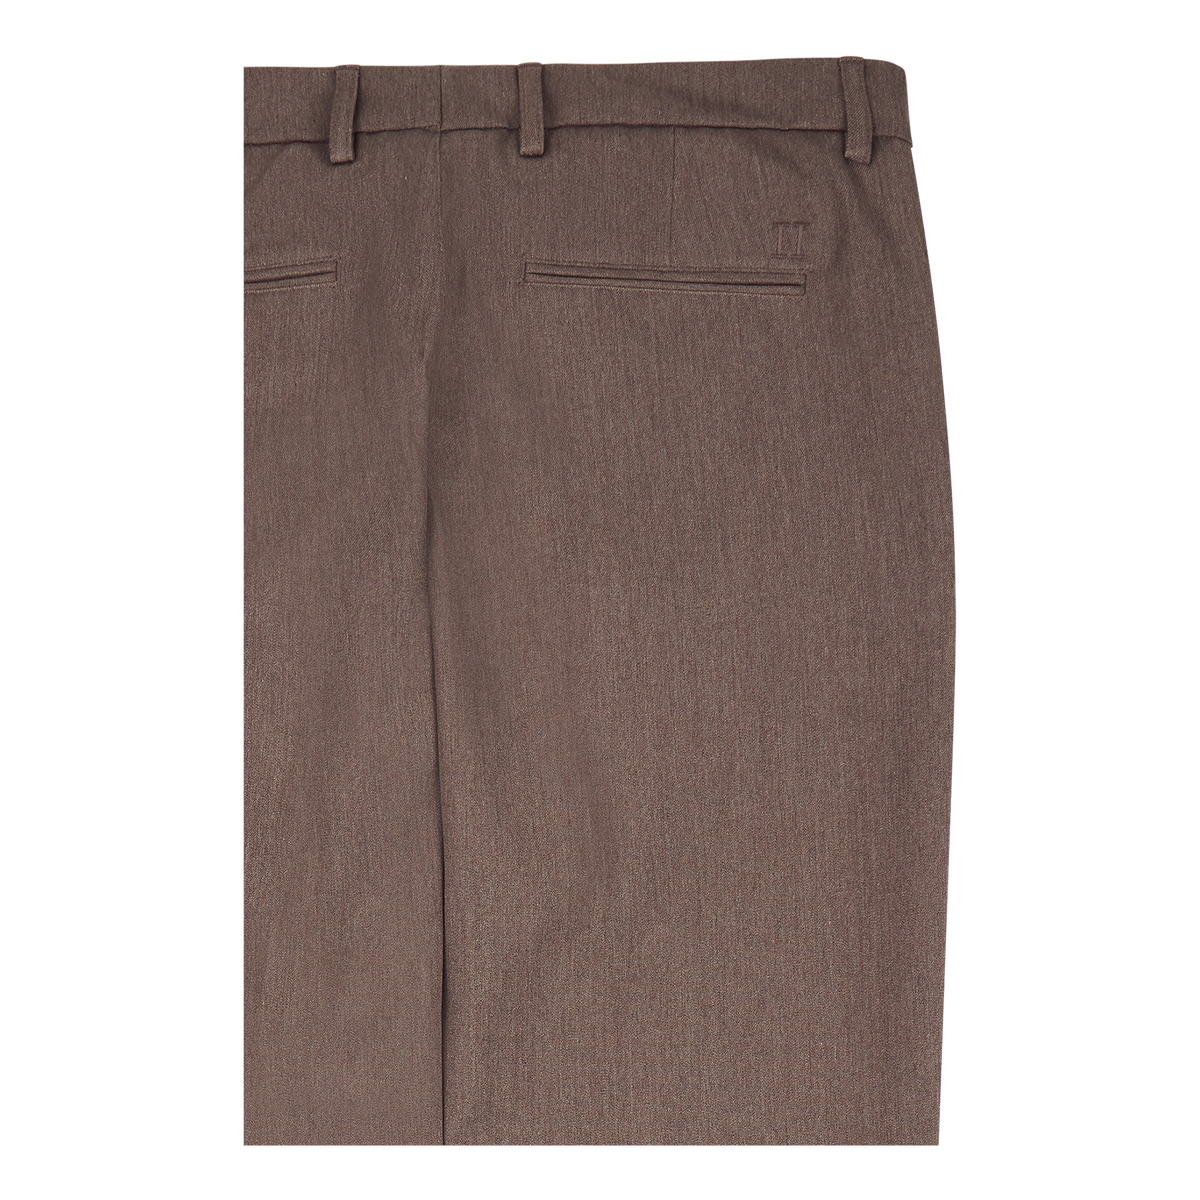 Les Deux Como Reg Suit Pants - Seasonal Brown Melange "34